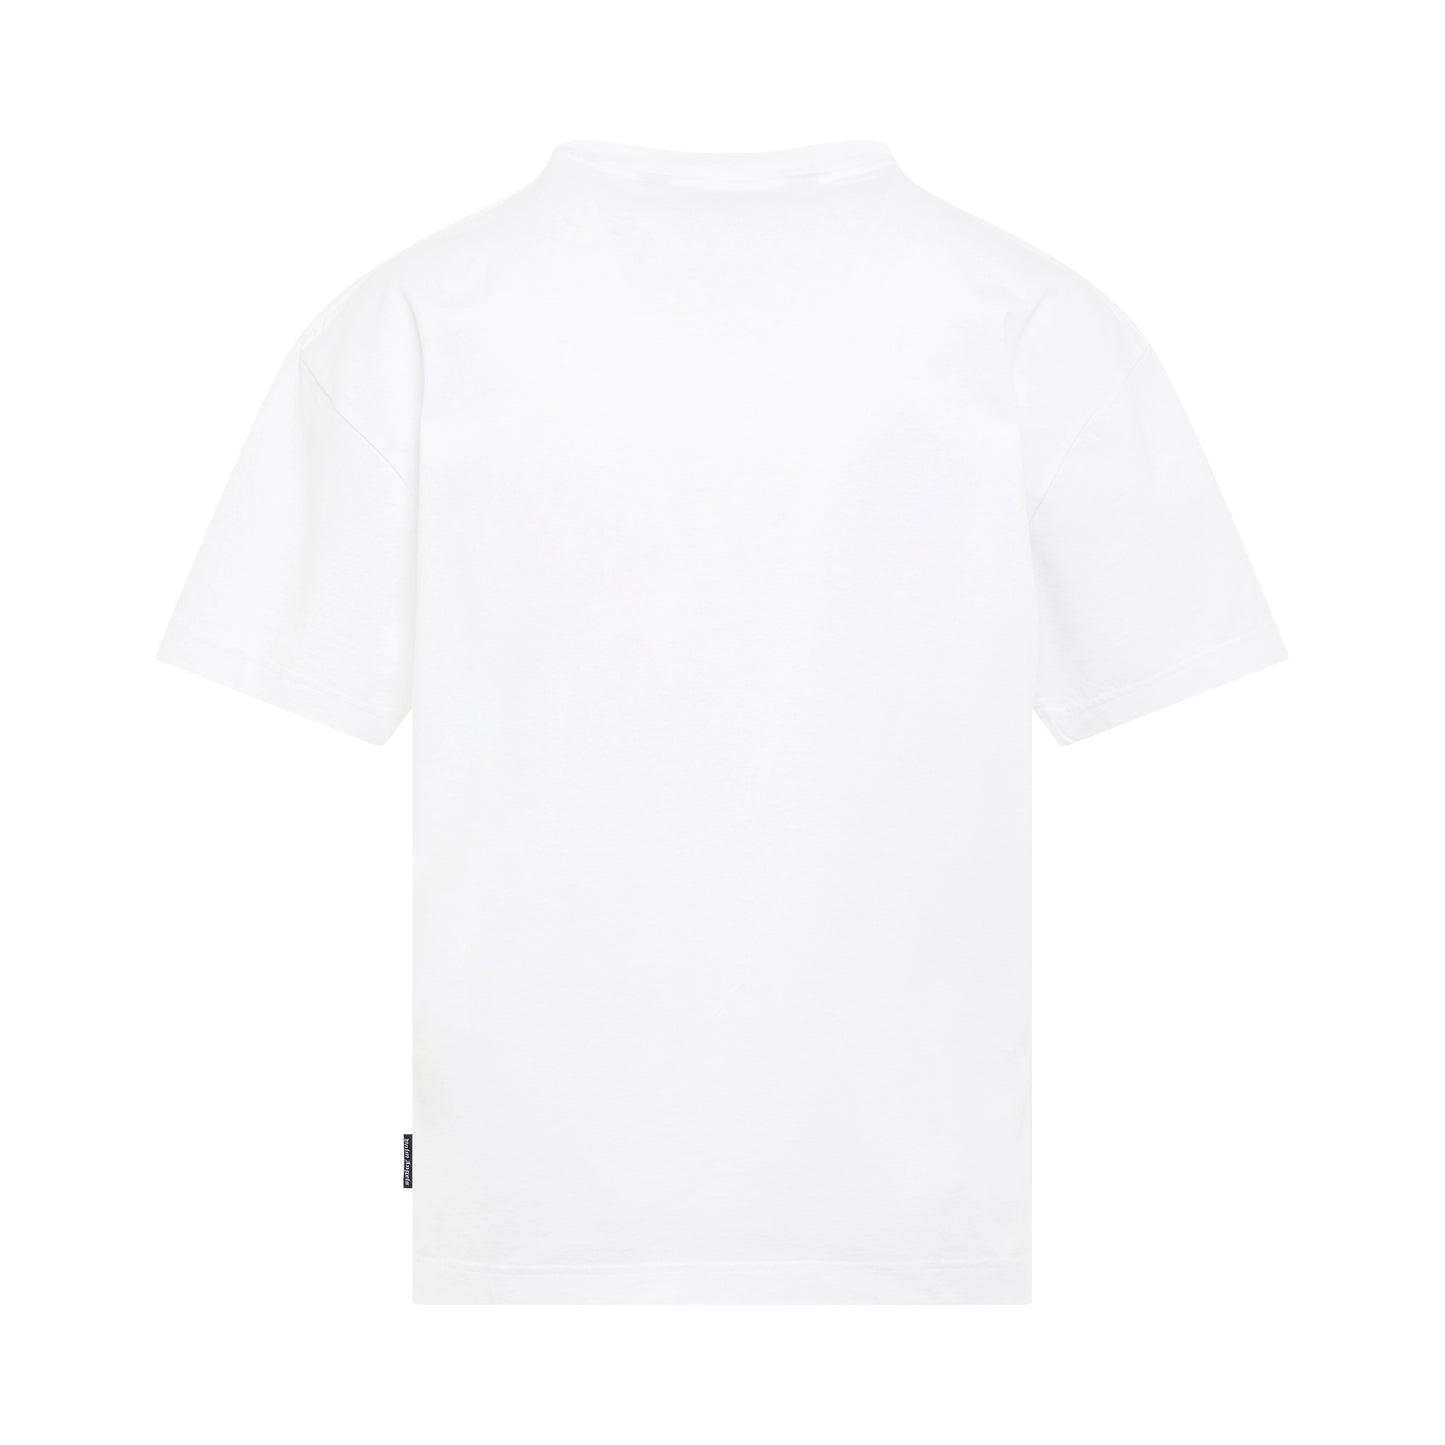 "Hunter" Logo Print T-Shirt in White/Black